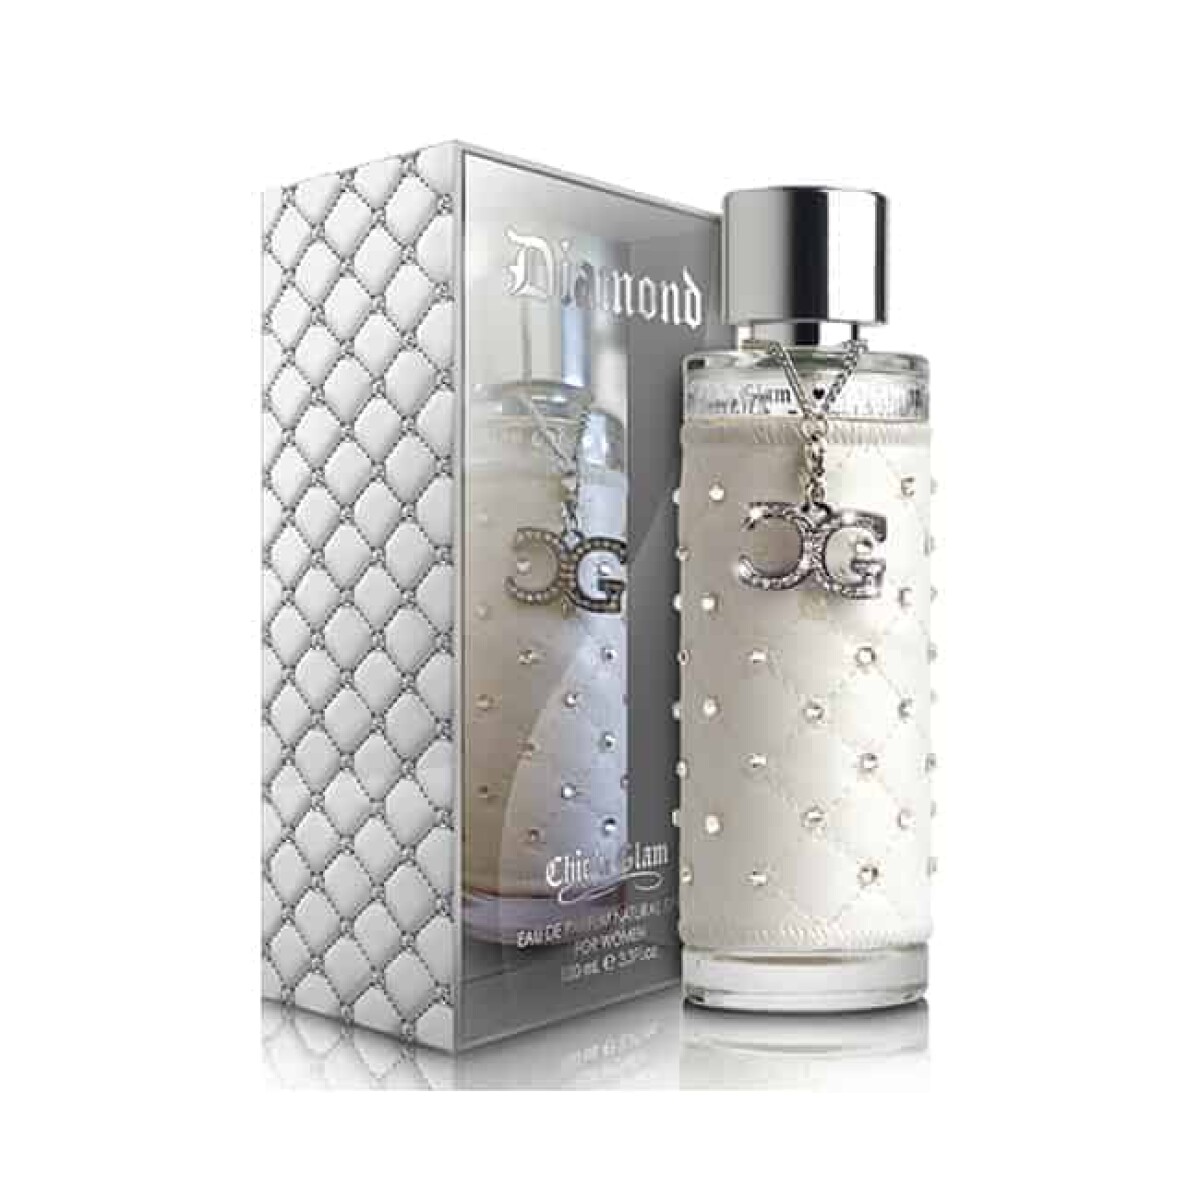 Perfume New Brand Chic N' Glam Diamond Edp 100 ml 